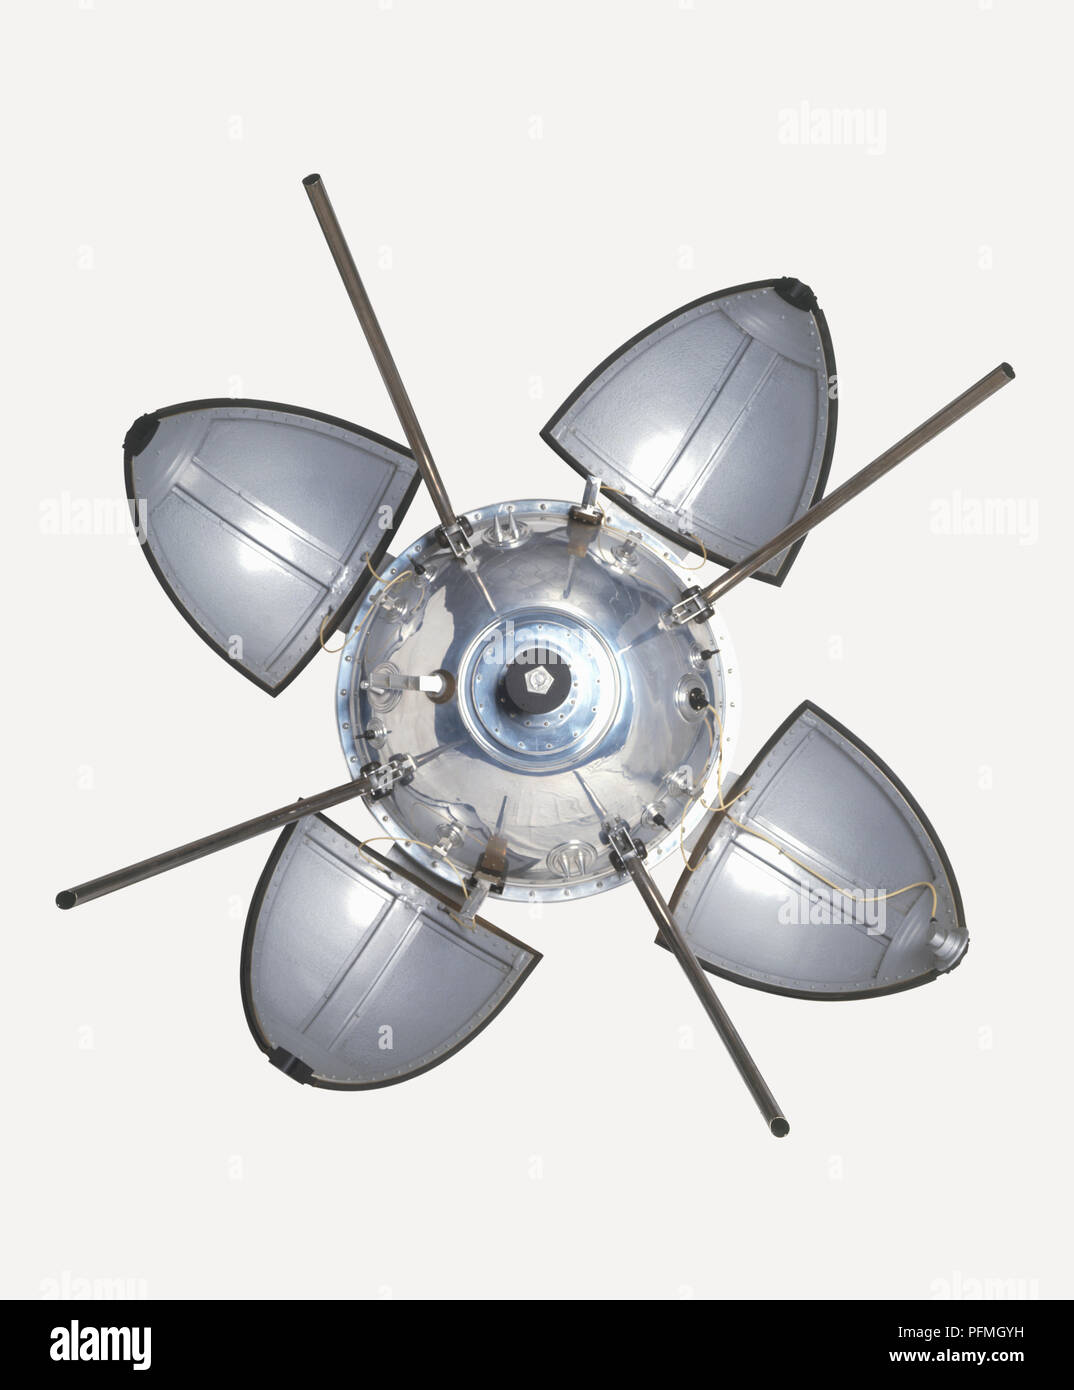 Capsula di atterraggio di fabbricazione sovietica Luna 9 sonda spaziale,  noto anche come Lunik 9 Foto stock - Alamy